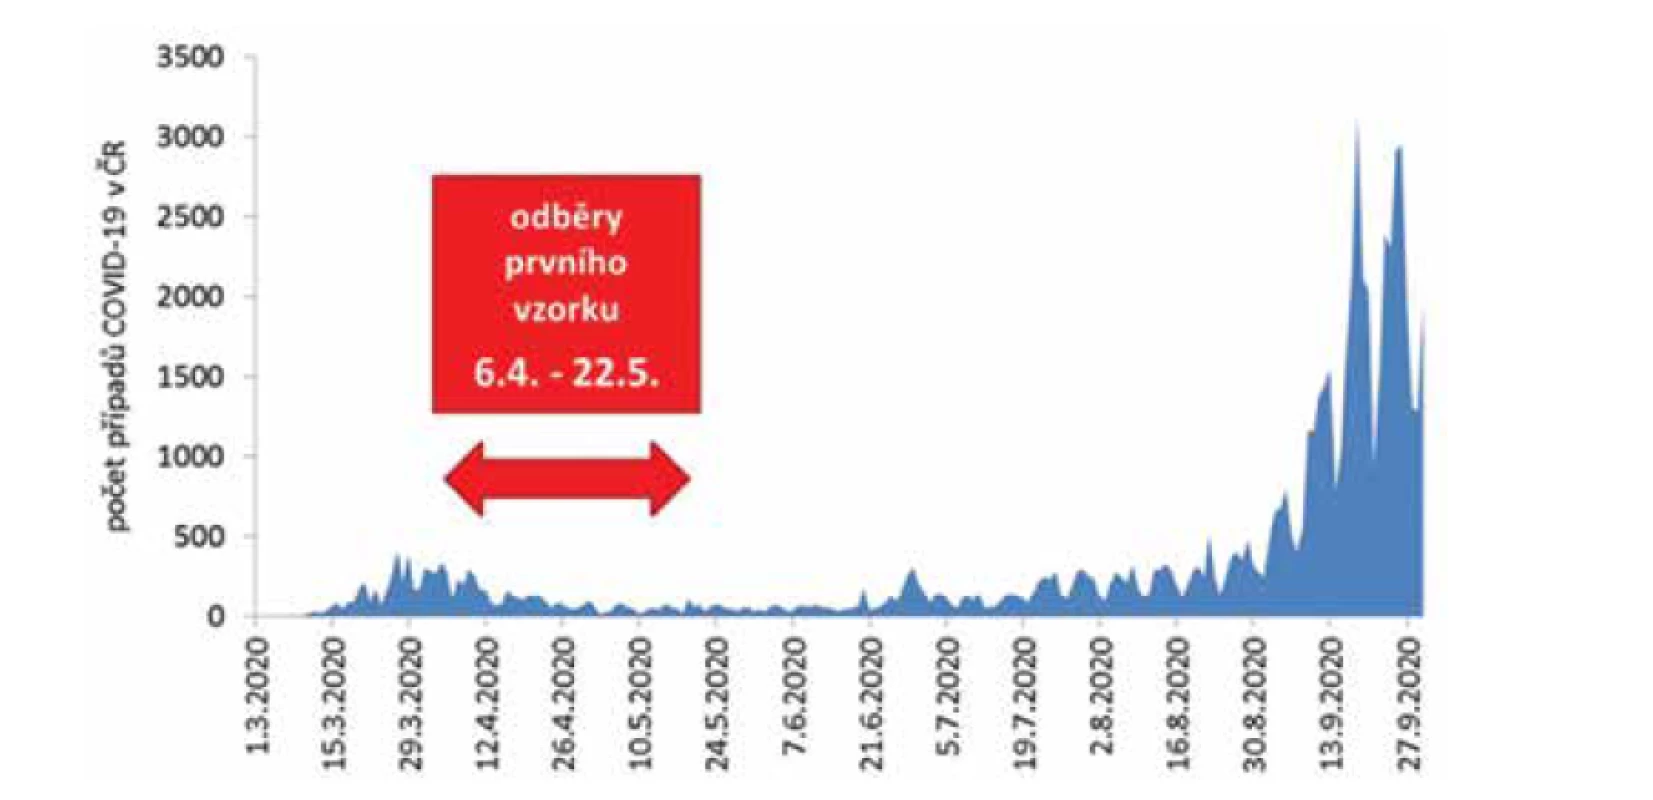 Epidemická křivka, počet případů COVID-19 v ČR podle dne zjištění pozitivity PCR
a období odběru prvního vzorku na sérologii u personálu SZÚ